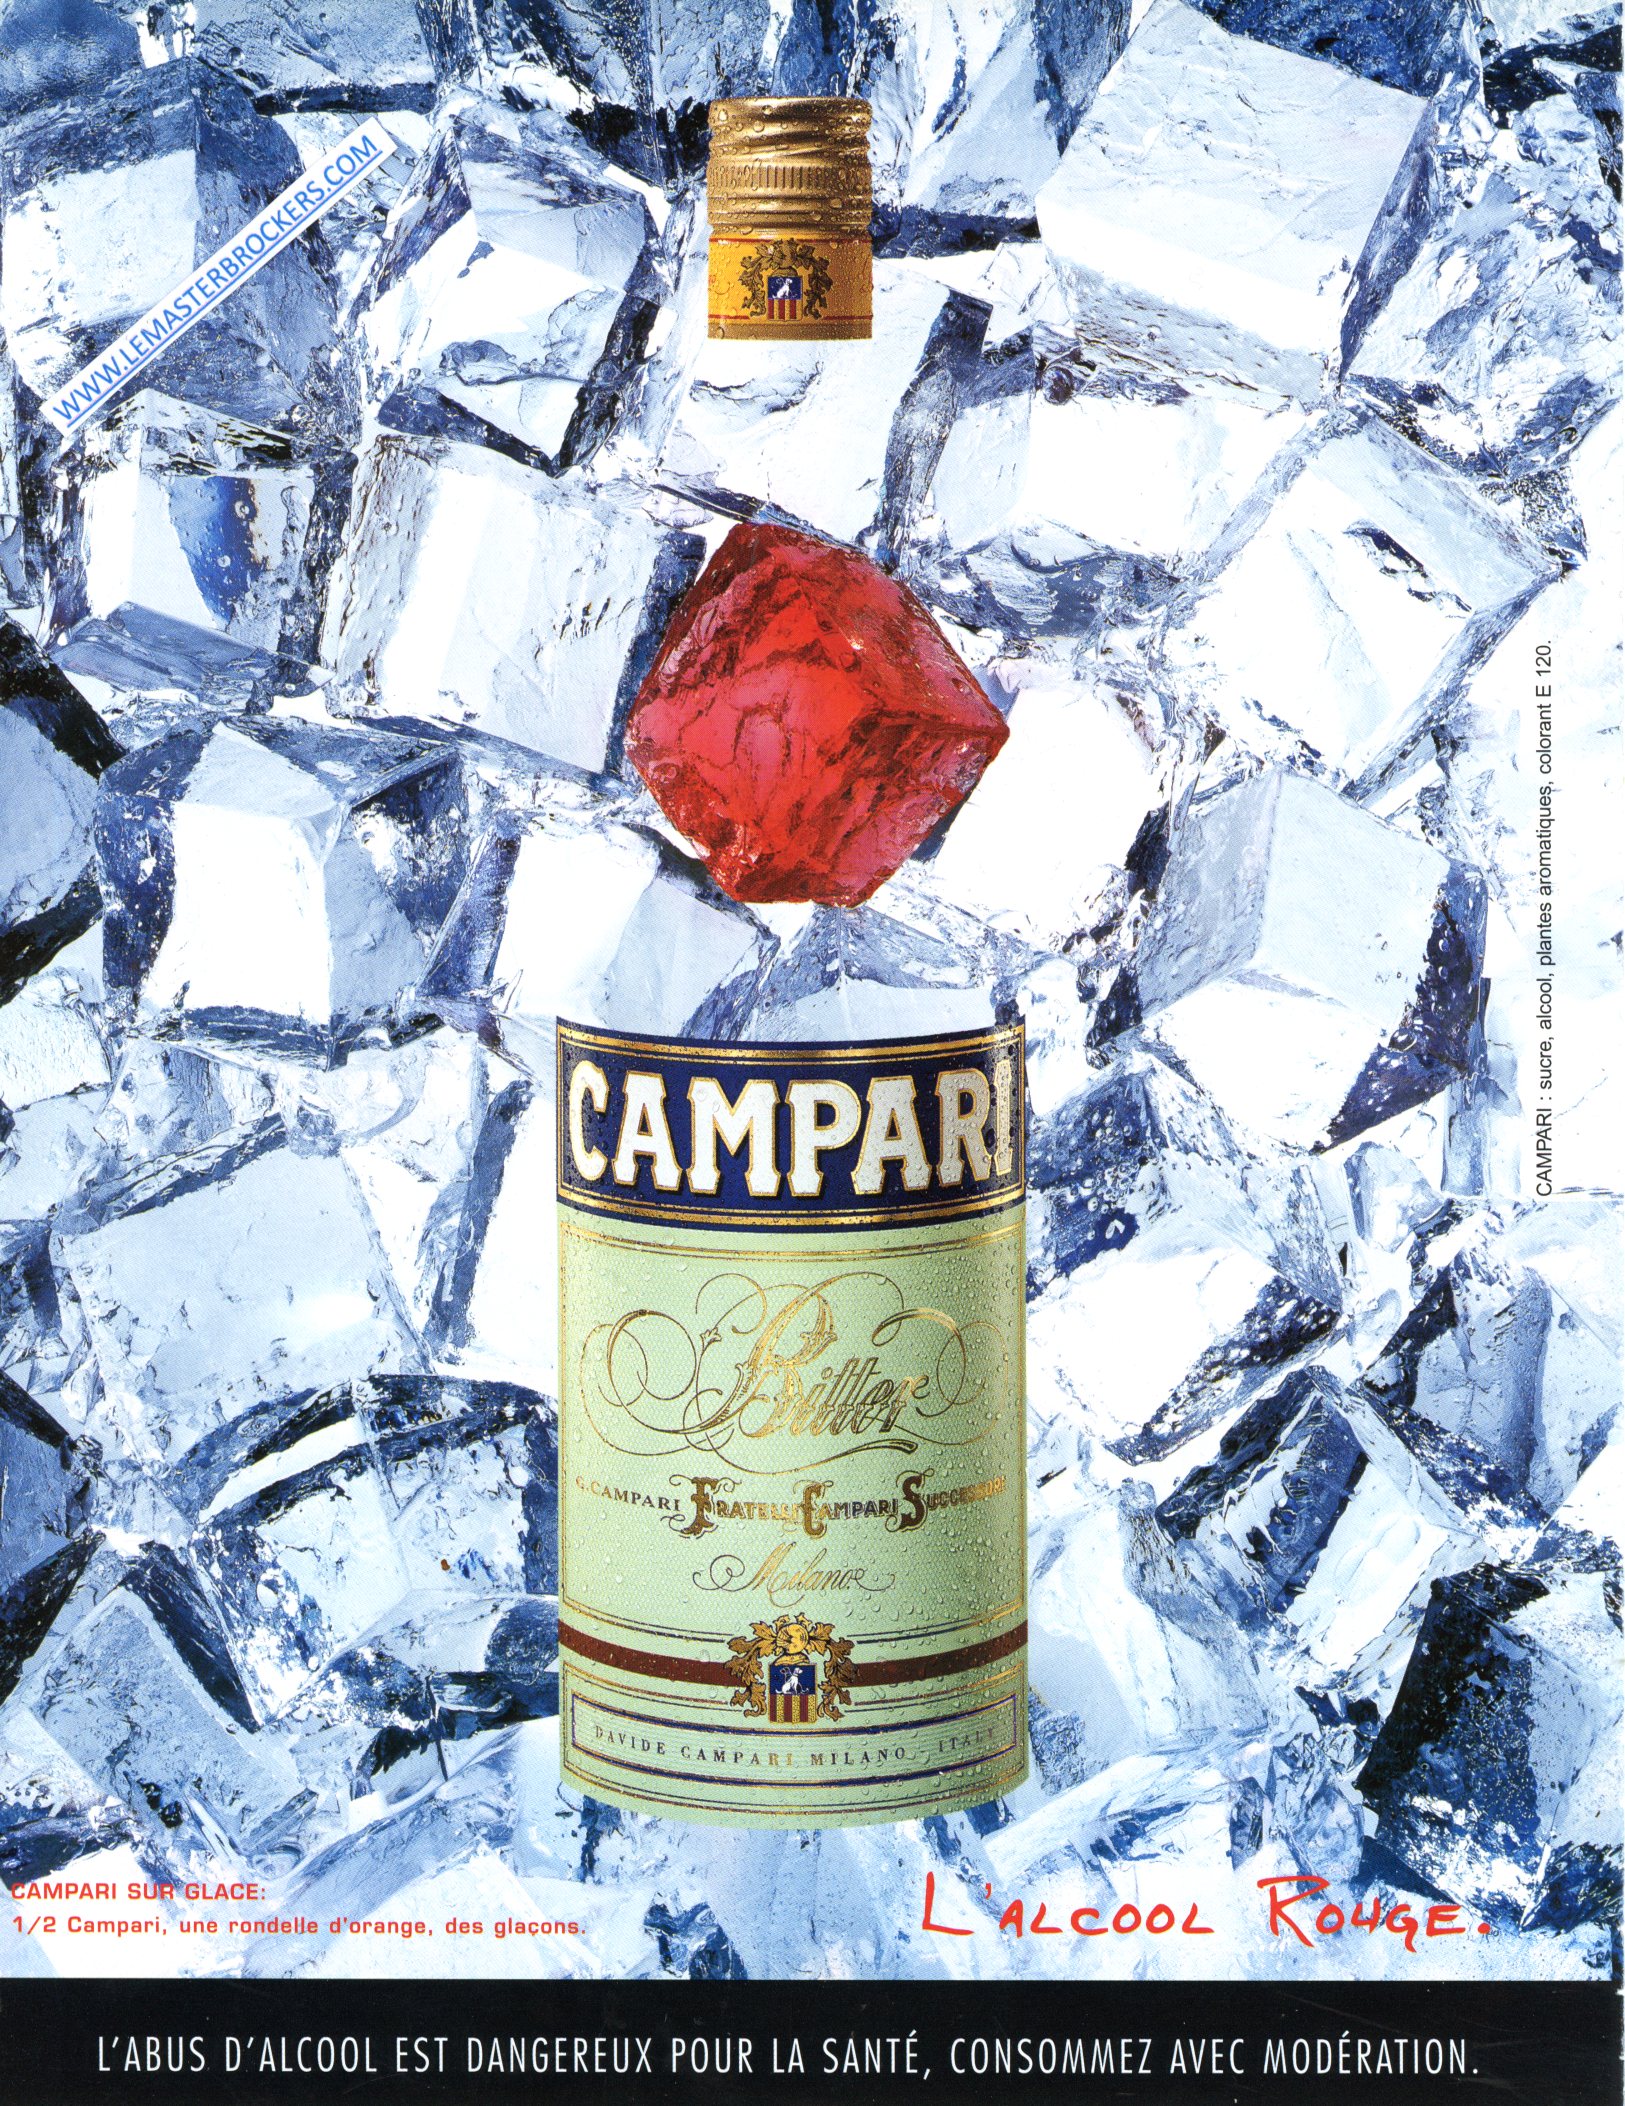 PUBLICITÉ ADVERTISING 2001 CAMPARI SUR GLACE ALCOOL ROUGE LEMASTERBROCKERS